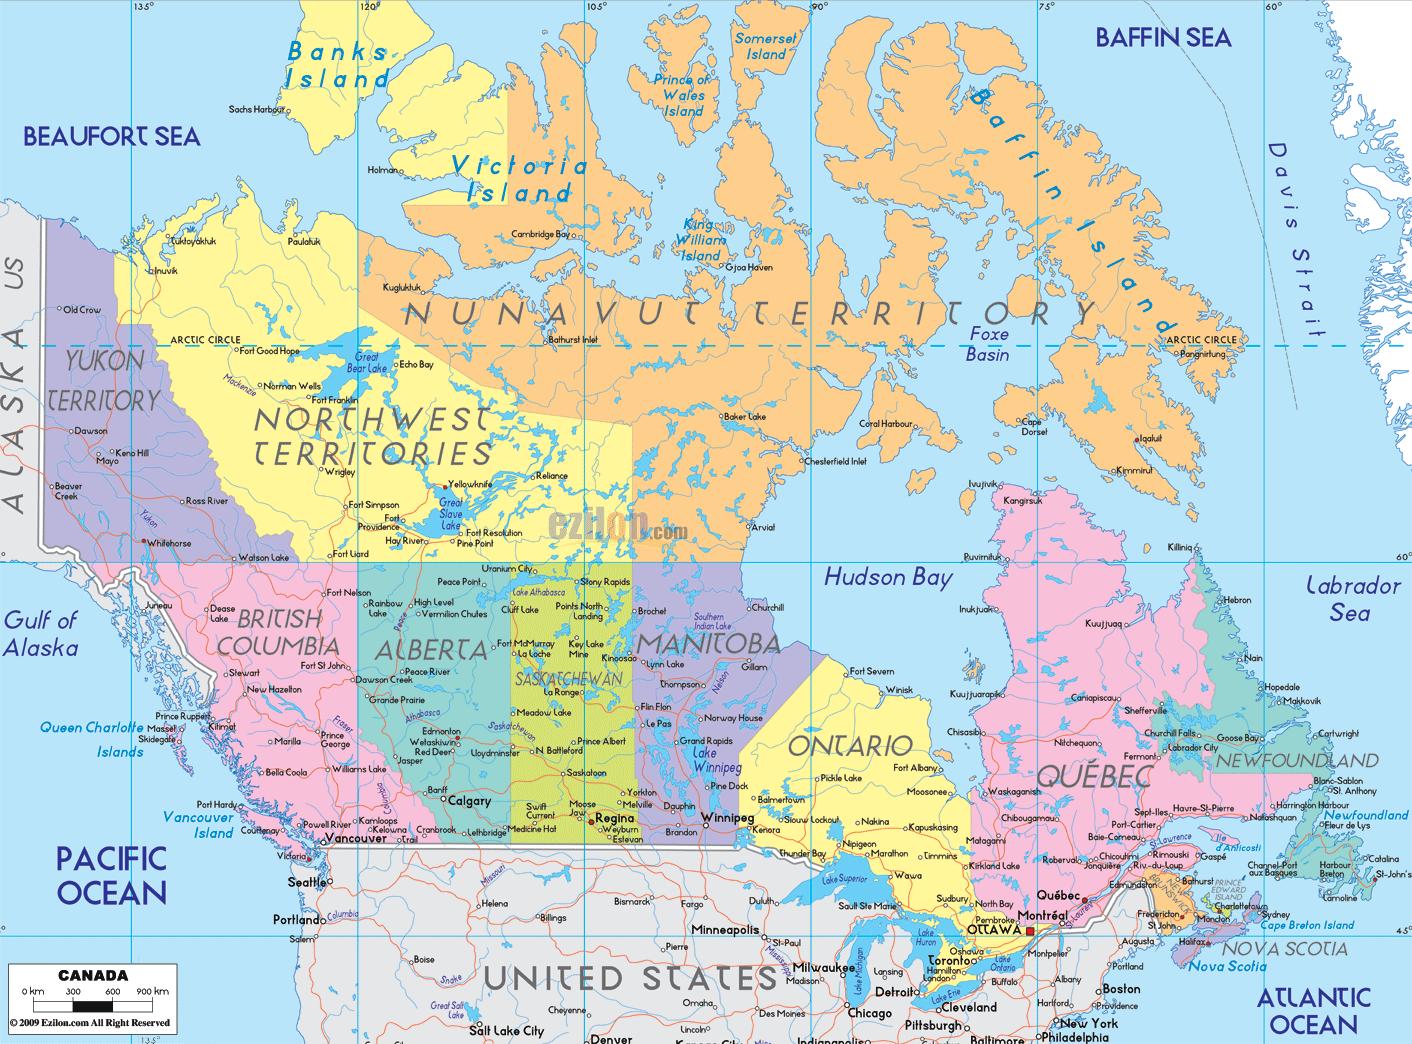 carte du canada avec villes